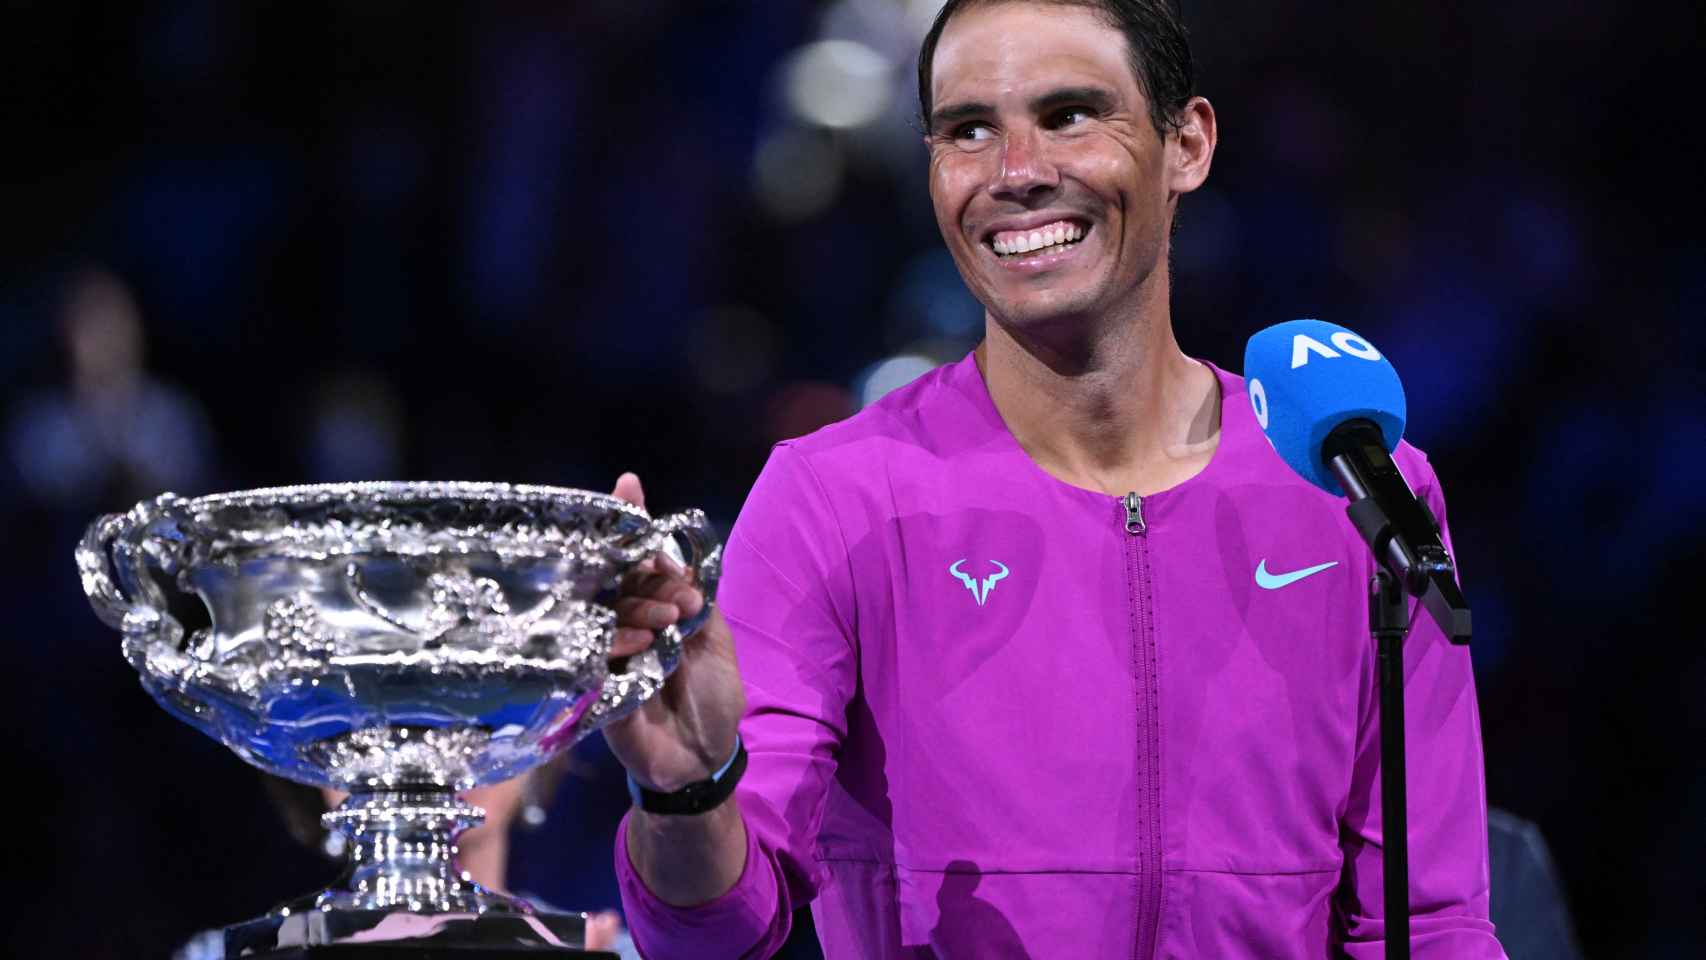 Rafael Nadal agradece los ánimos al público del Abierto de Australia junto al trofeo de campeón